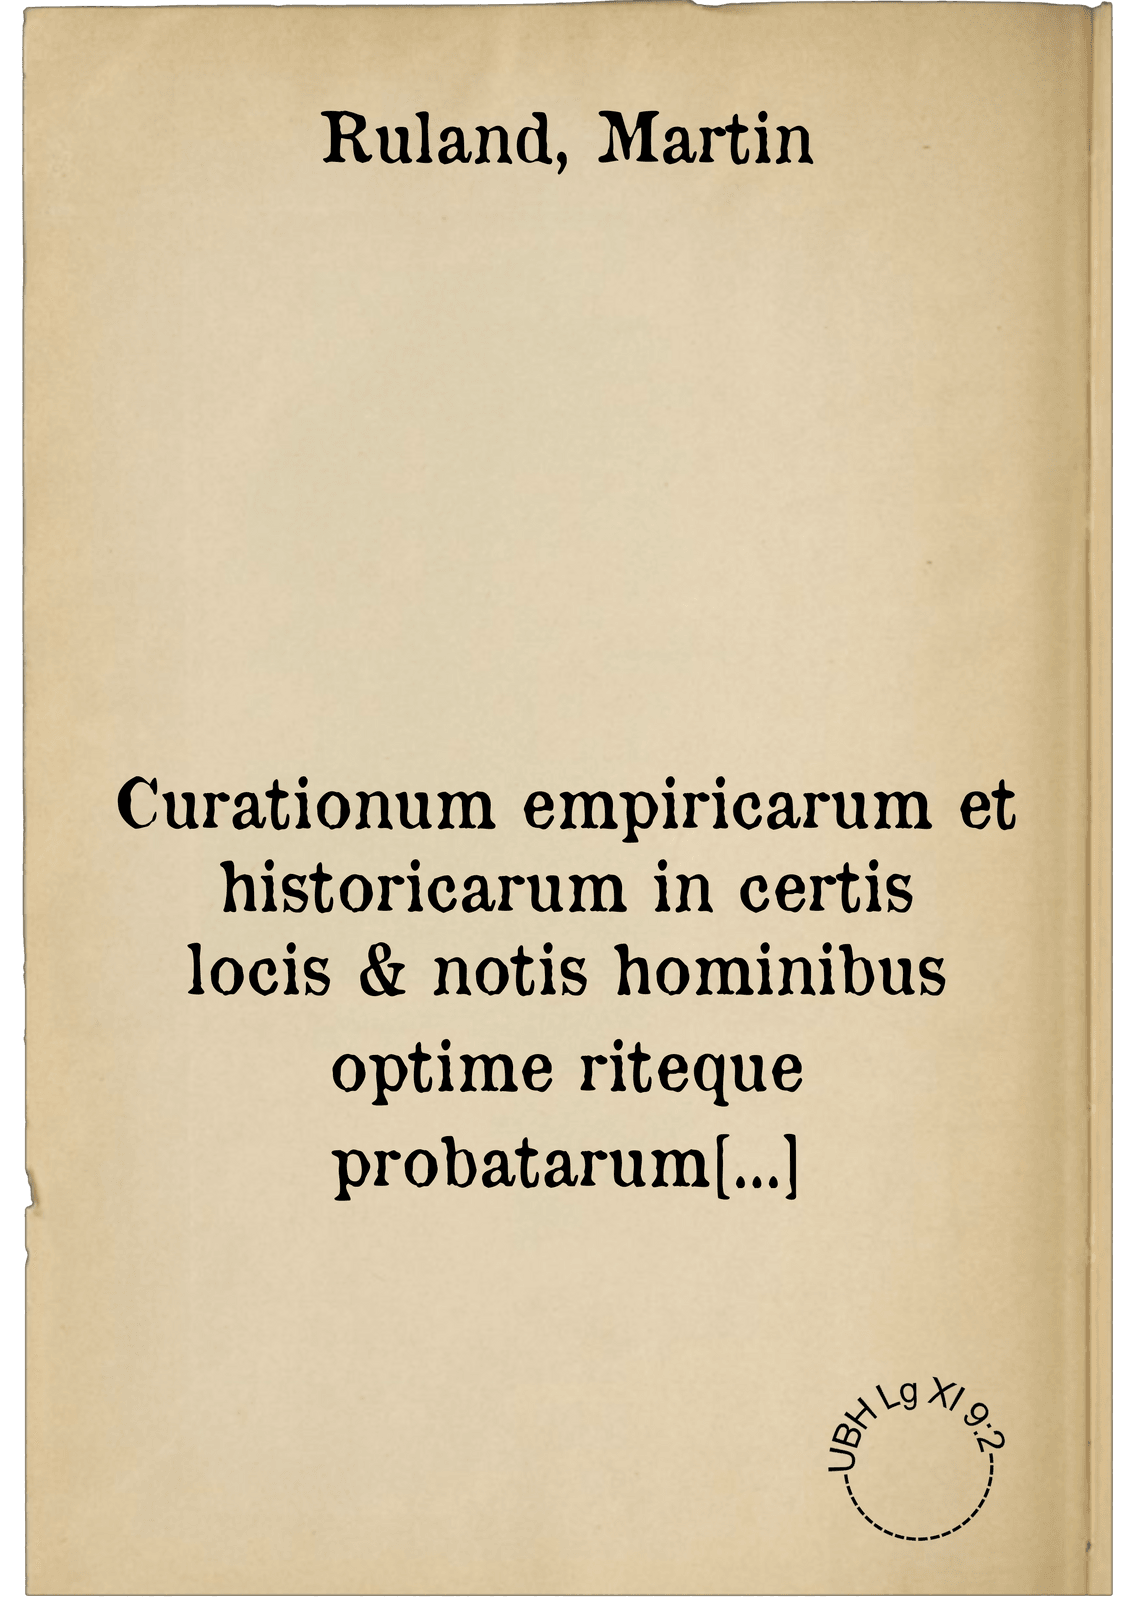 Curationum empiricarum et historicarum in certis locis & notis hominibus optime riteque probatarum & expertarum, centuria quinta